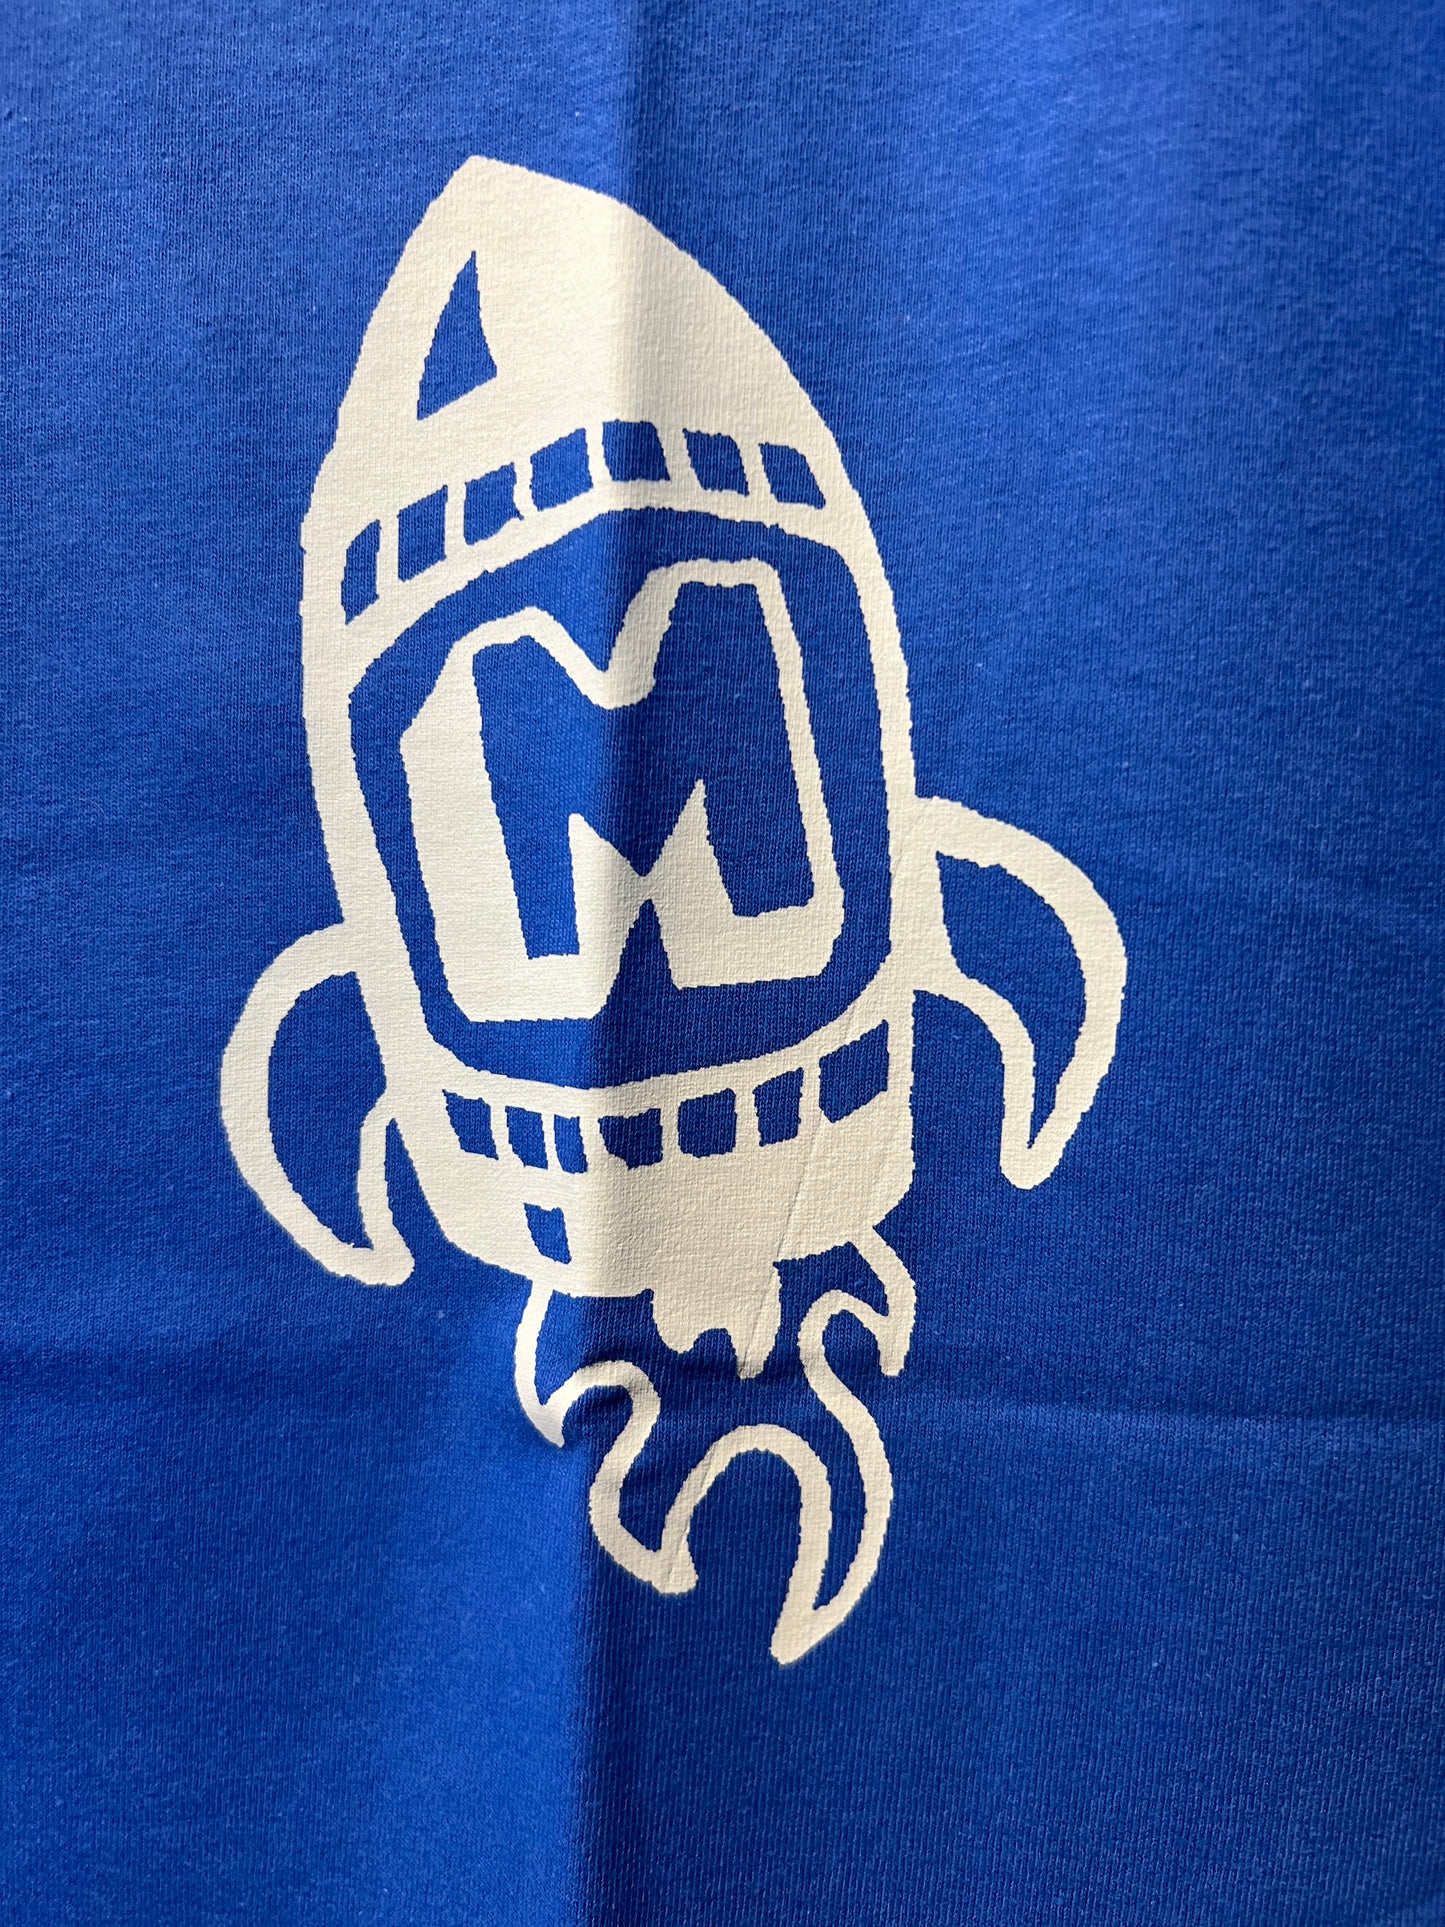 Mercury T-Shirt Rocket Logo Unisex